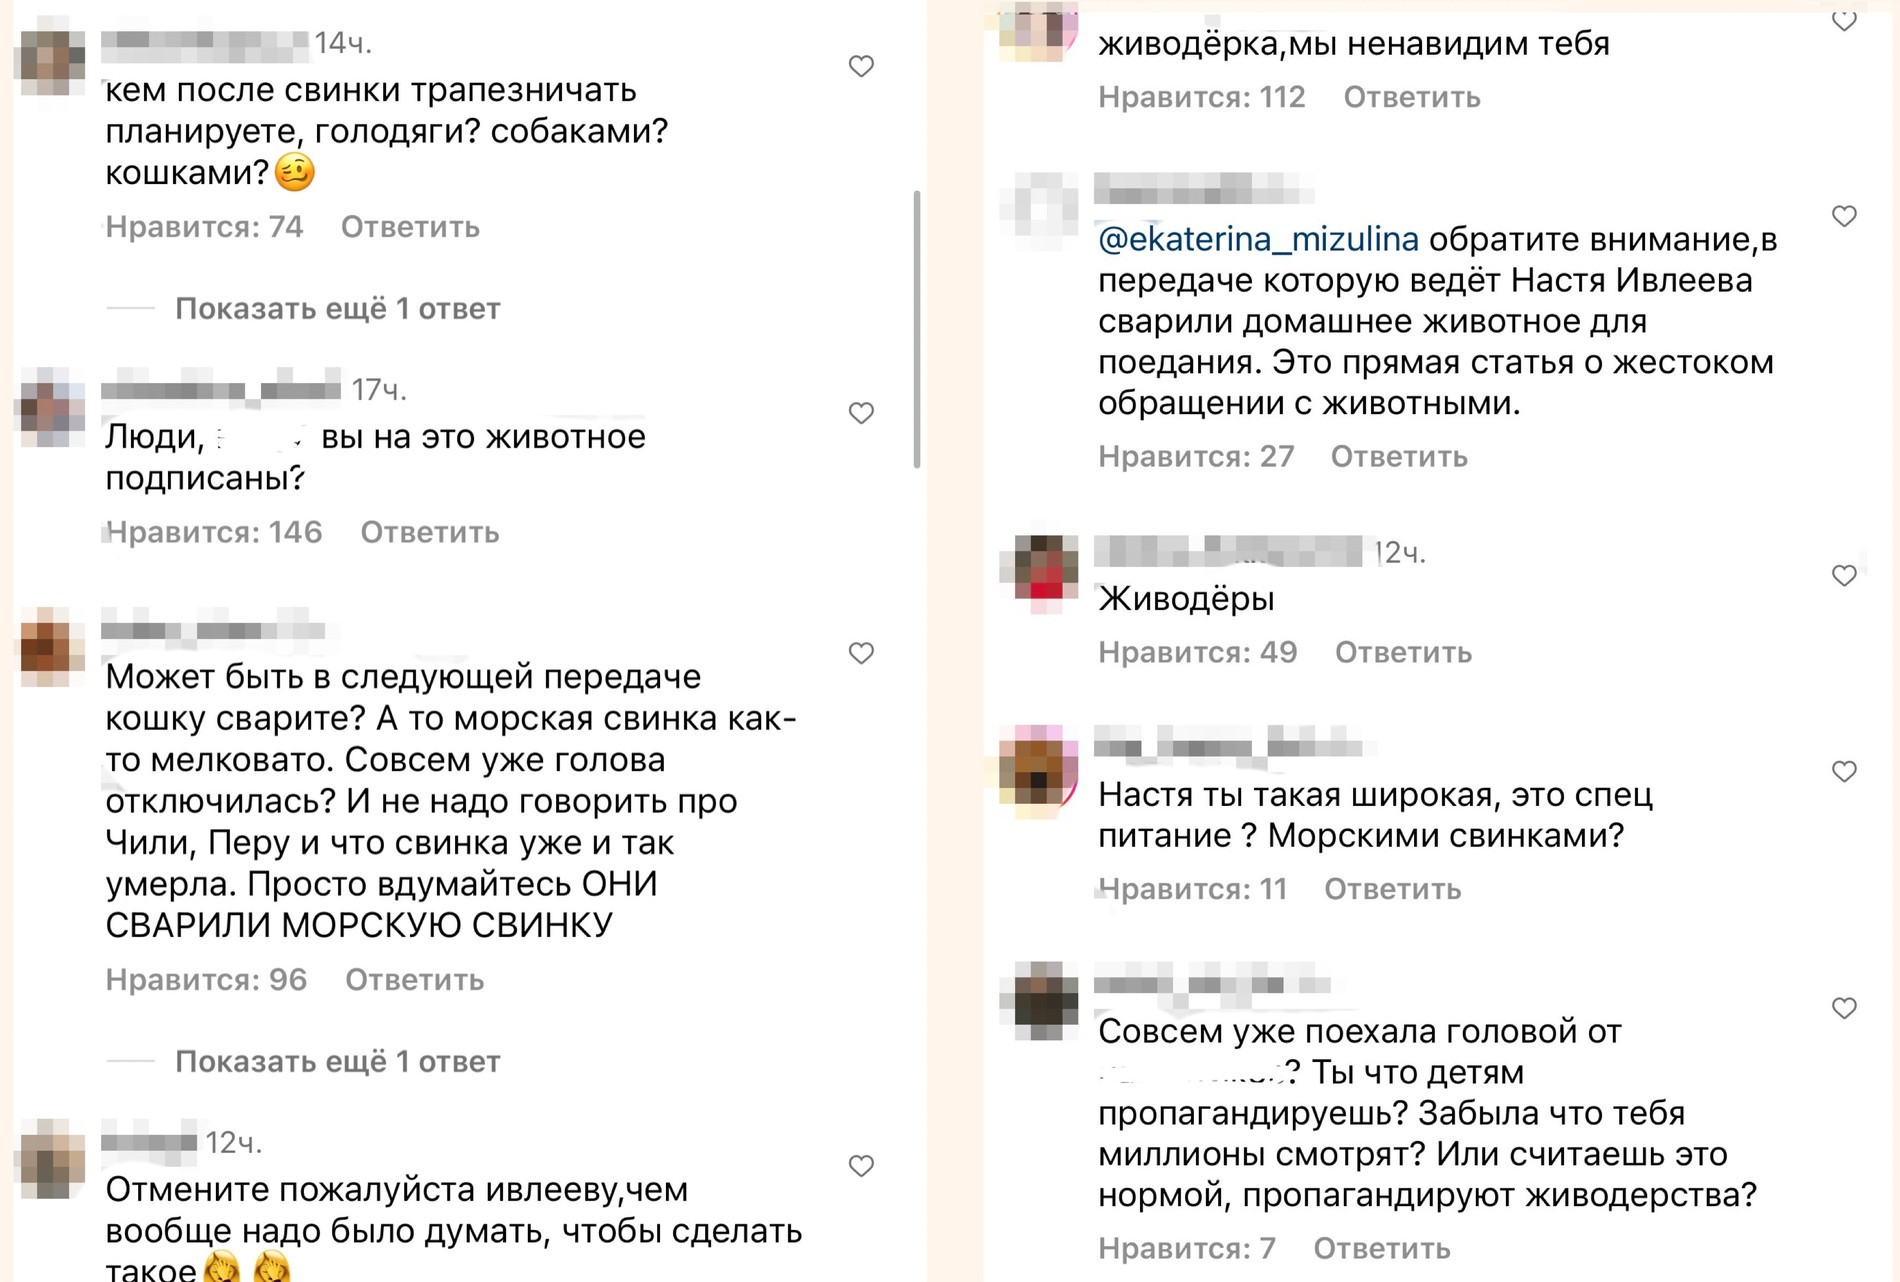 Комментарии под публикациями Анастасии Ивлеевой